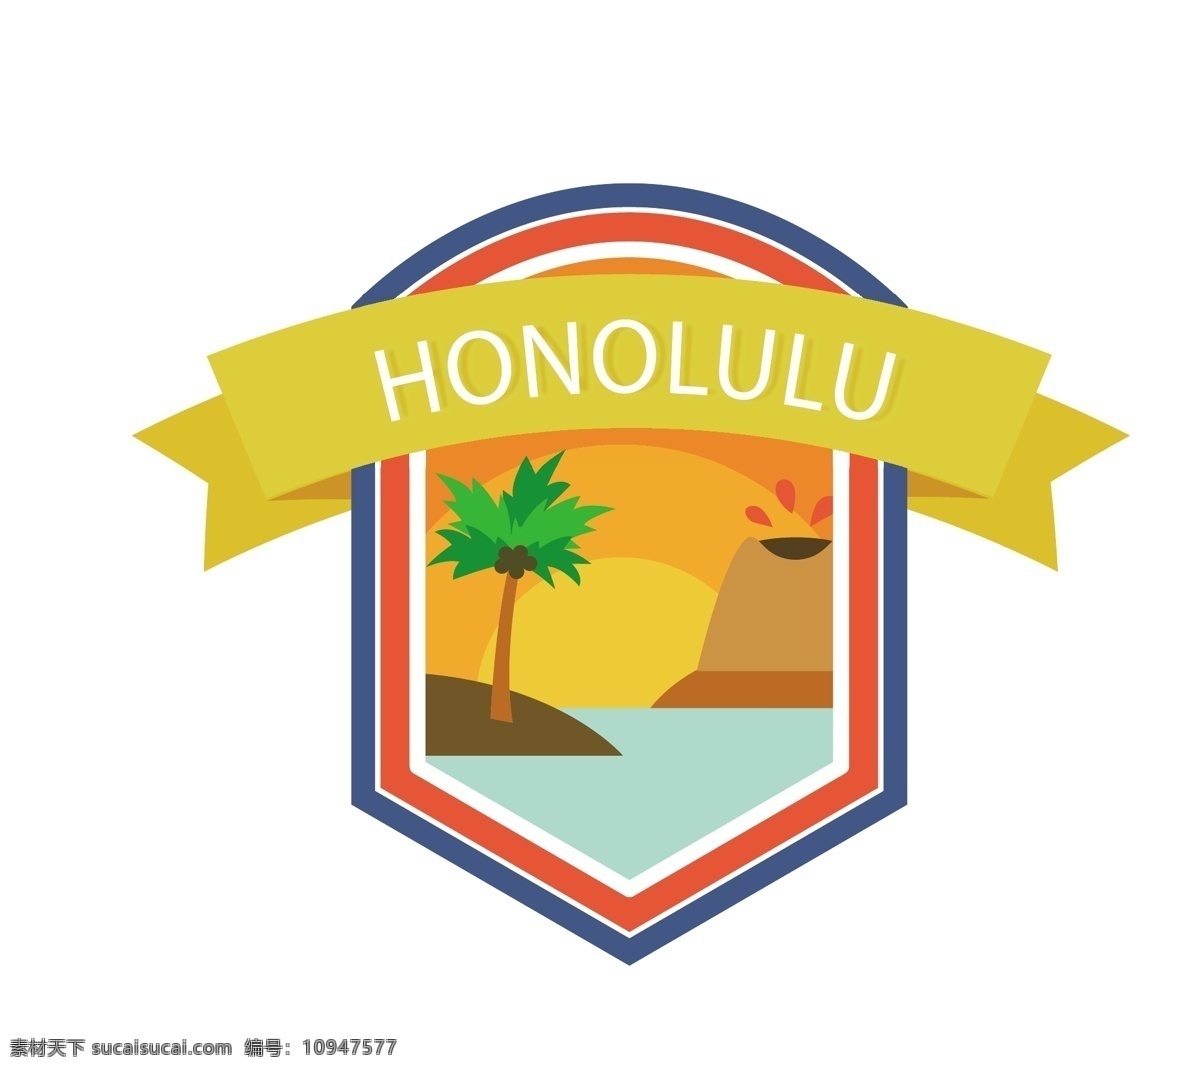 火奴鲁鲁 标签 矢量 夏威夷 卡通 英文 矢量素材 设计素材 平面素材